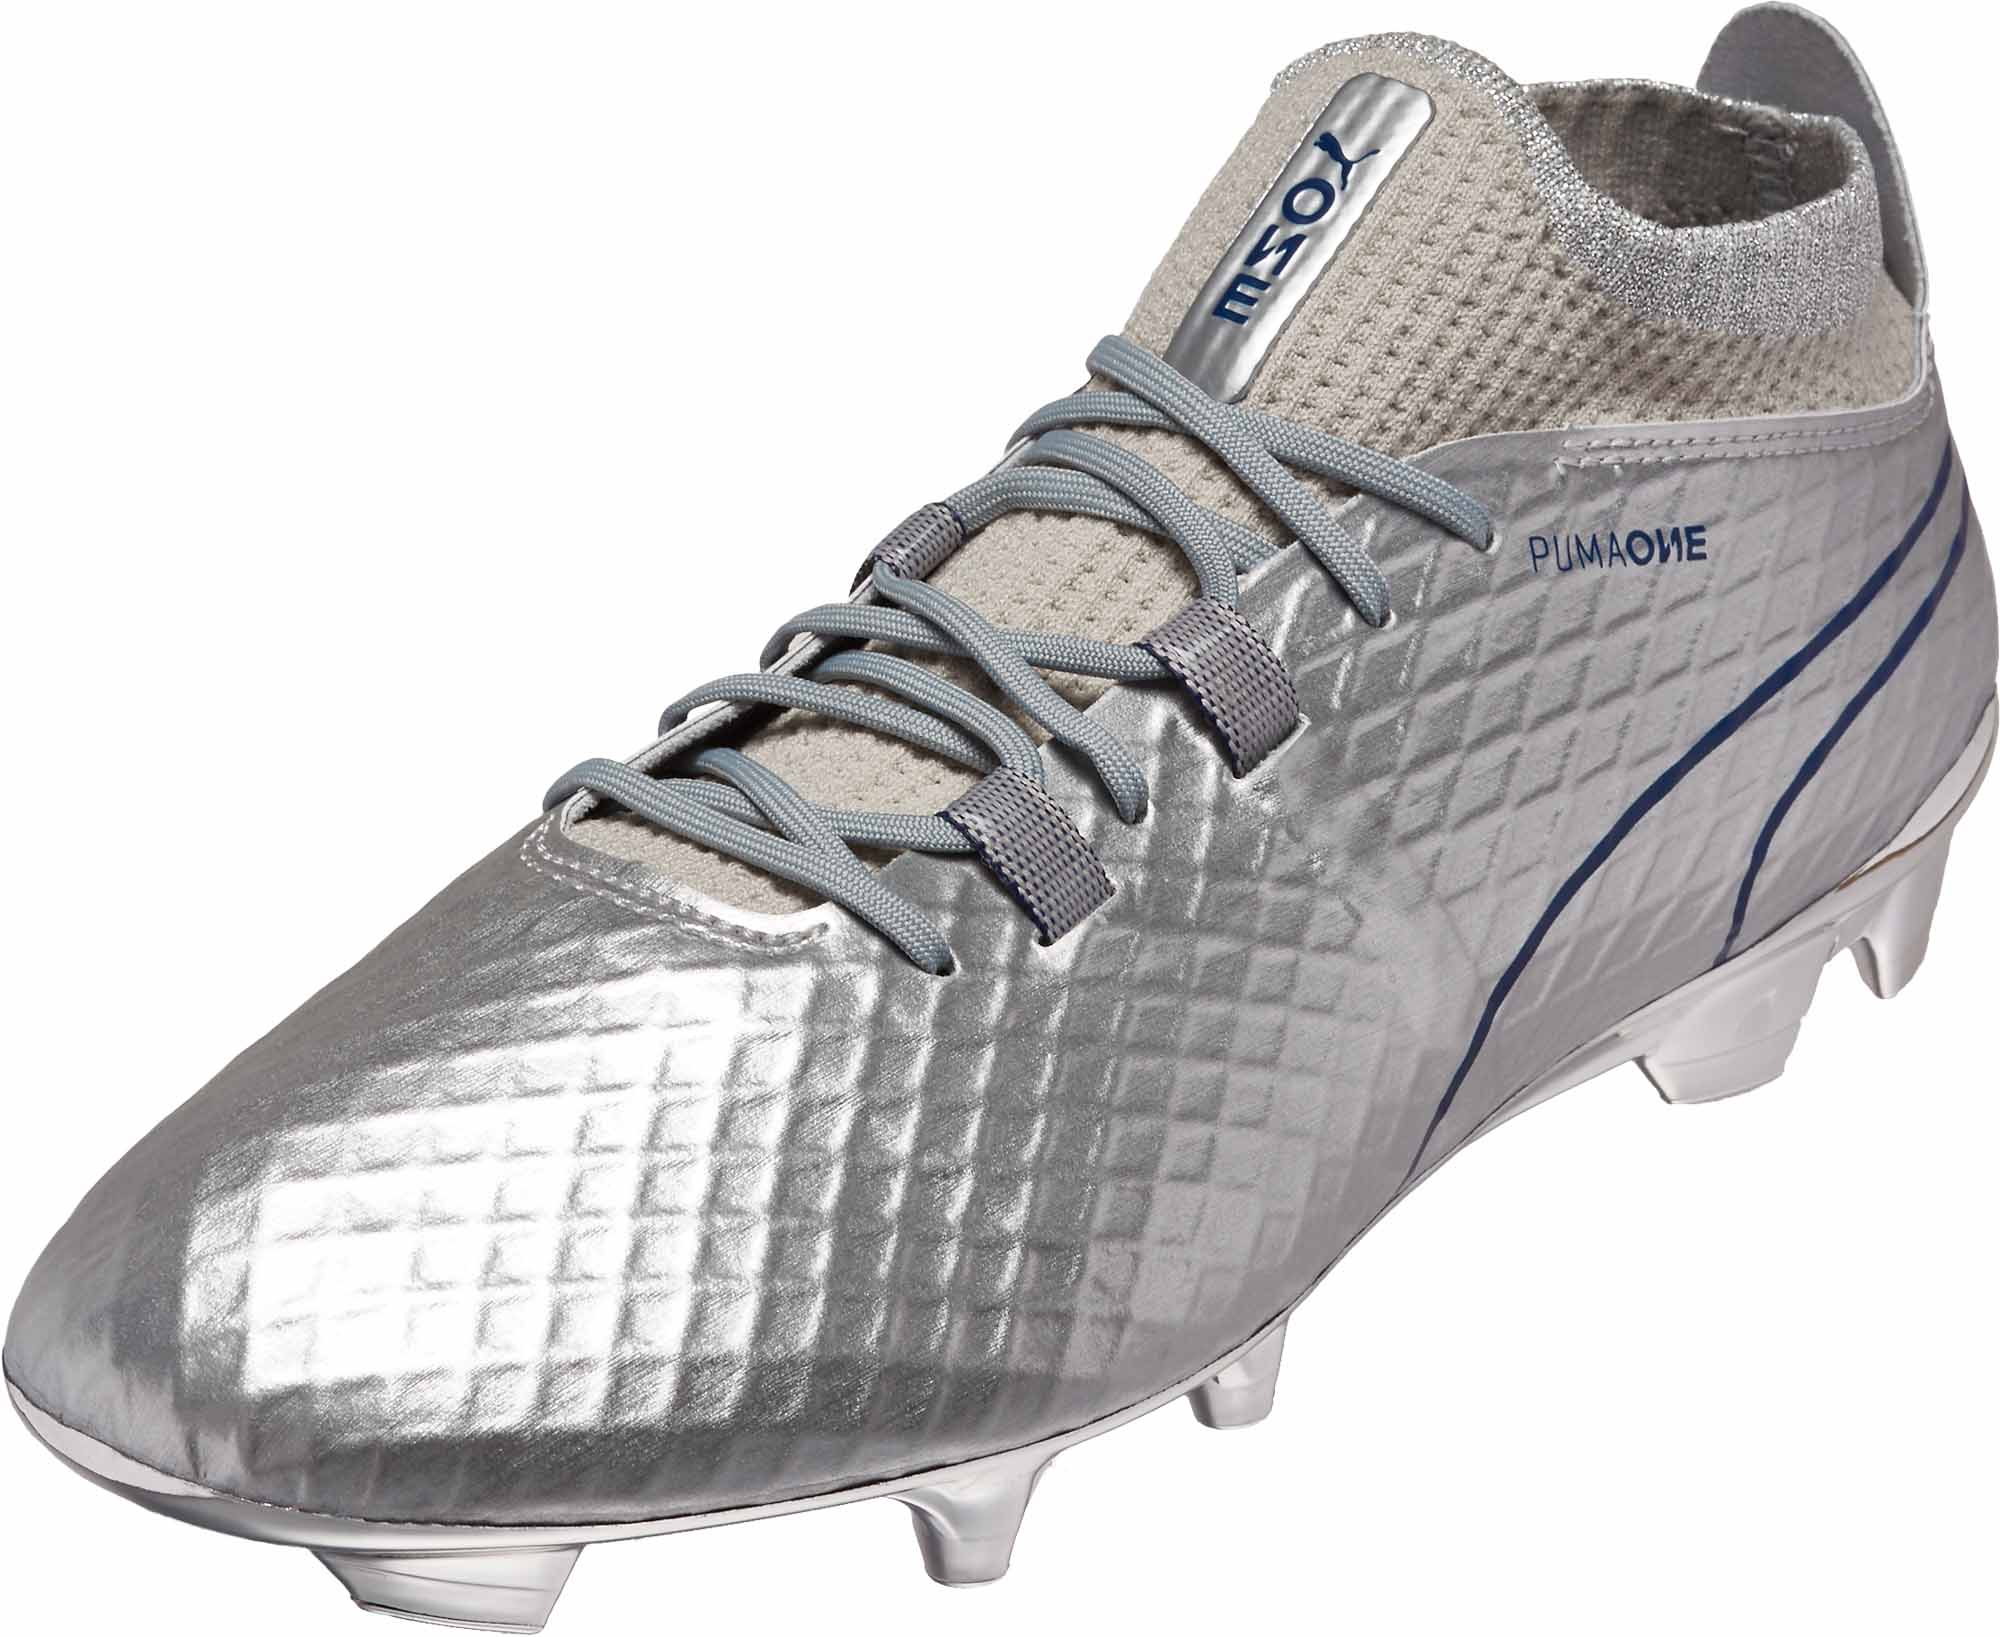 Puma One Chrome FG - Puma Soccer Shoes